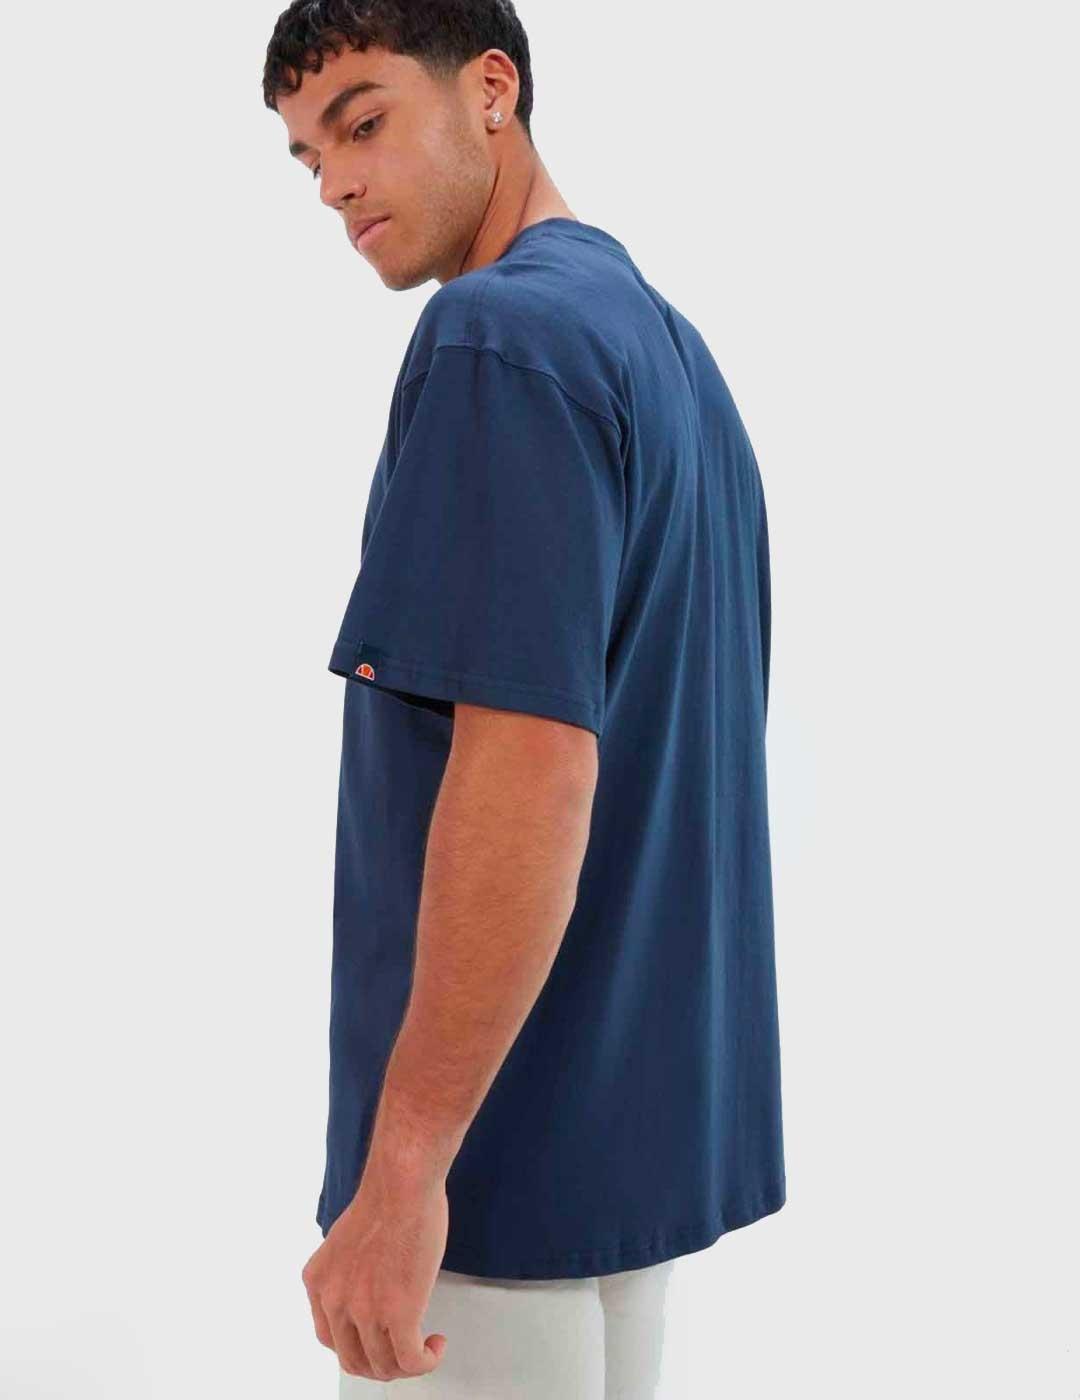 Camiseta Ellesse Acquario azul para hombre